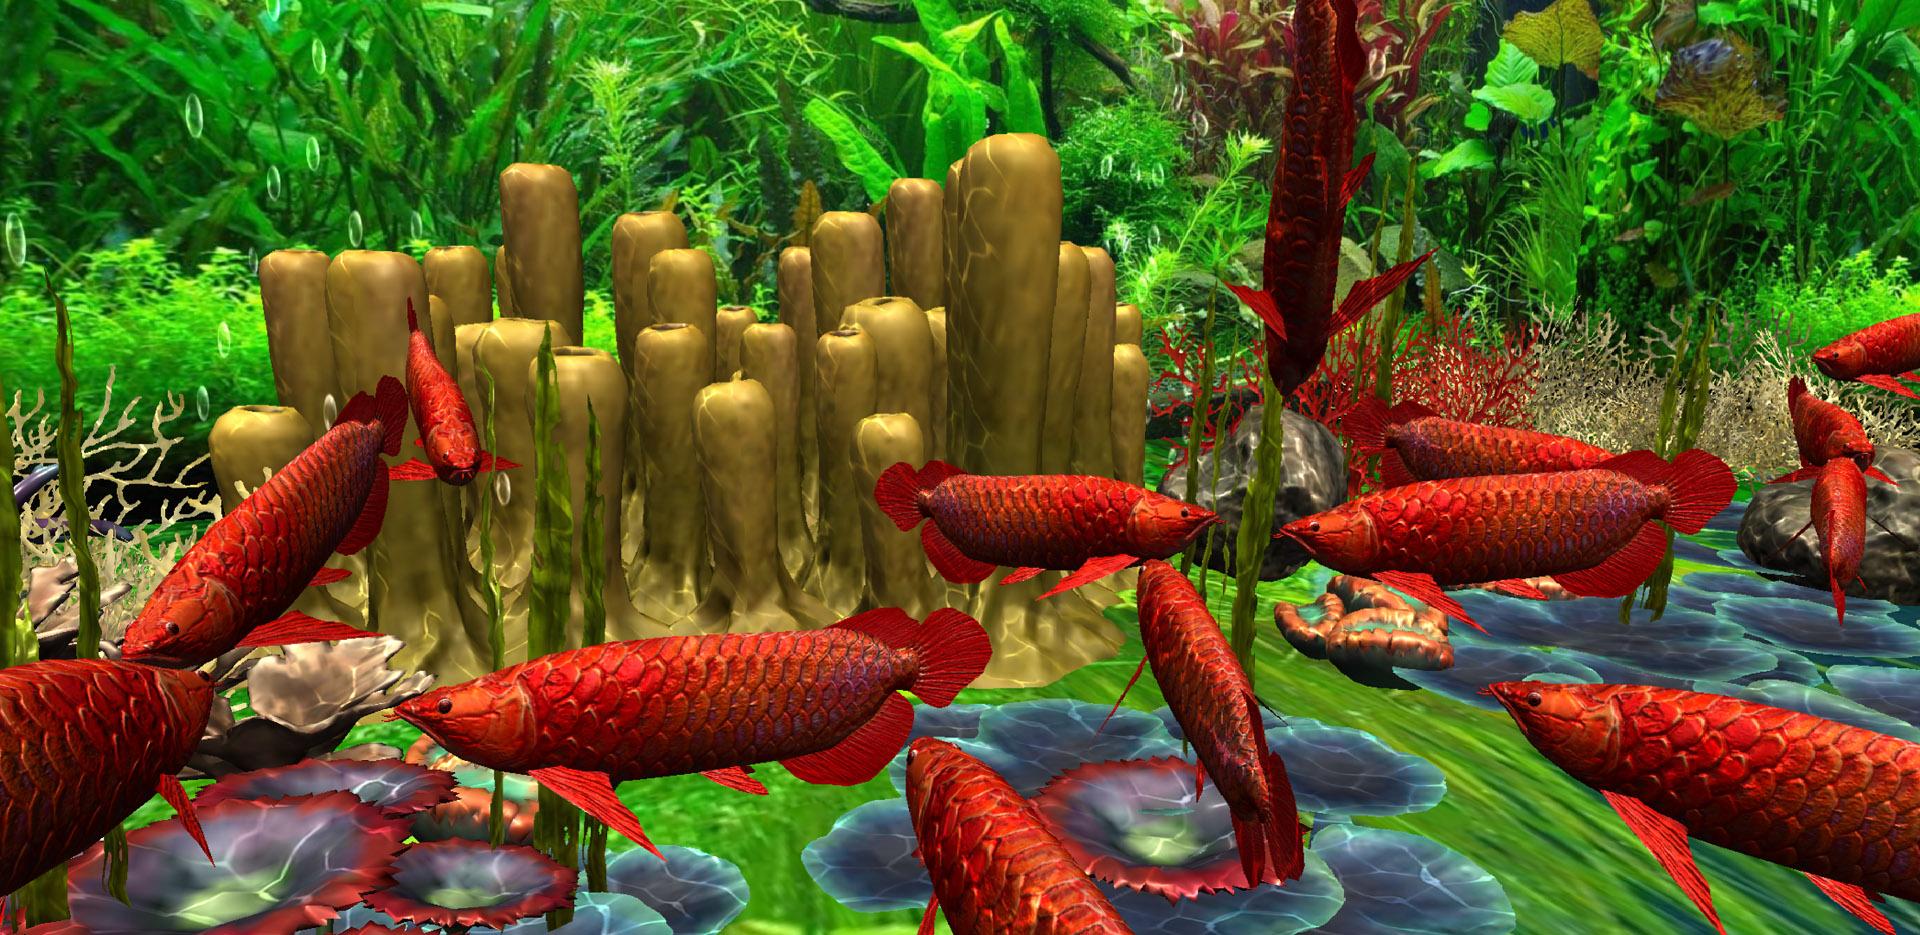 Được giới thiệu: Hình nền cá Kim Long đỏ 3D với hiệu ứng sống động và chuyển động công nghệ cao, tô điểm đẹp cho điện thoại của bạn. Xem hình ảnh để cảm nhận được sự độc đáo và tuyệt vời của nó.